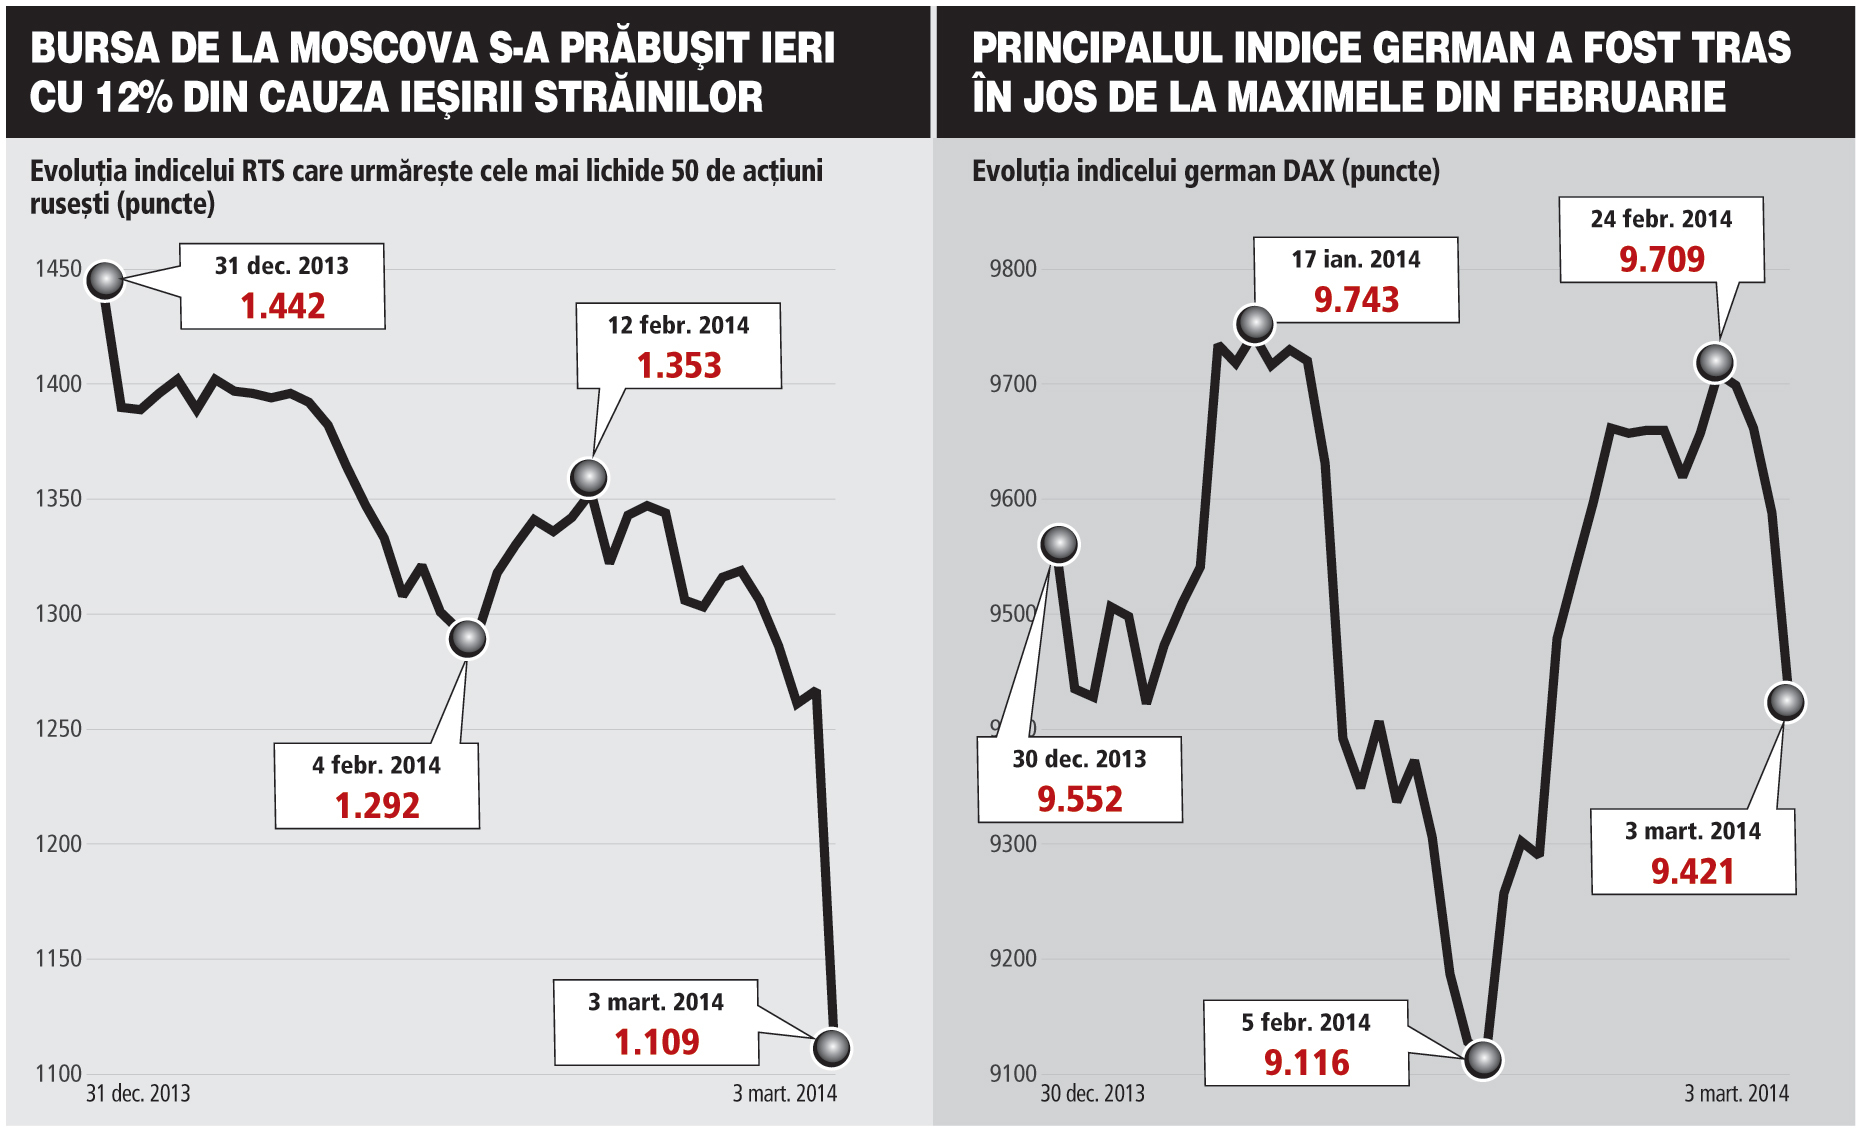 Bursele din Rusia şi din Ucraina s-au prăbuşit ieri cu peste 11% şi au contaminat toate pieţele din Europa